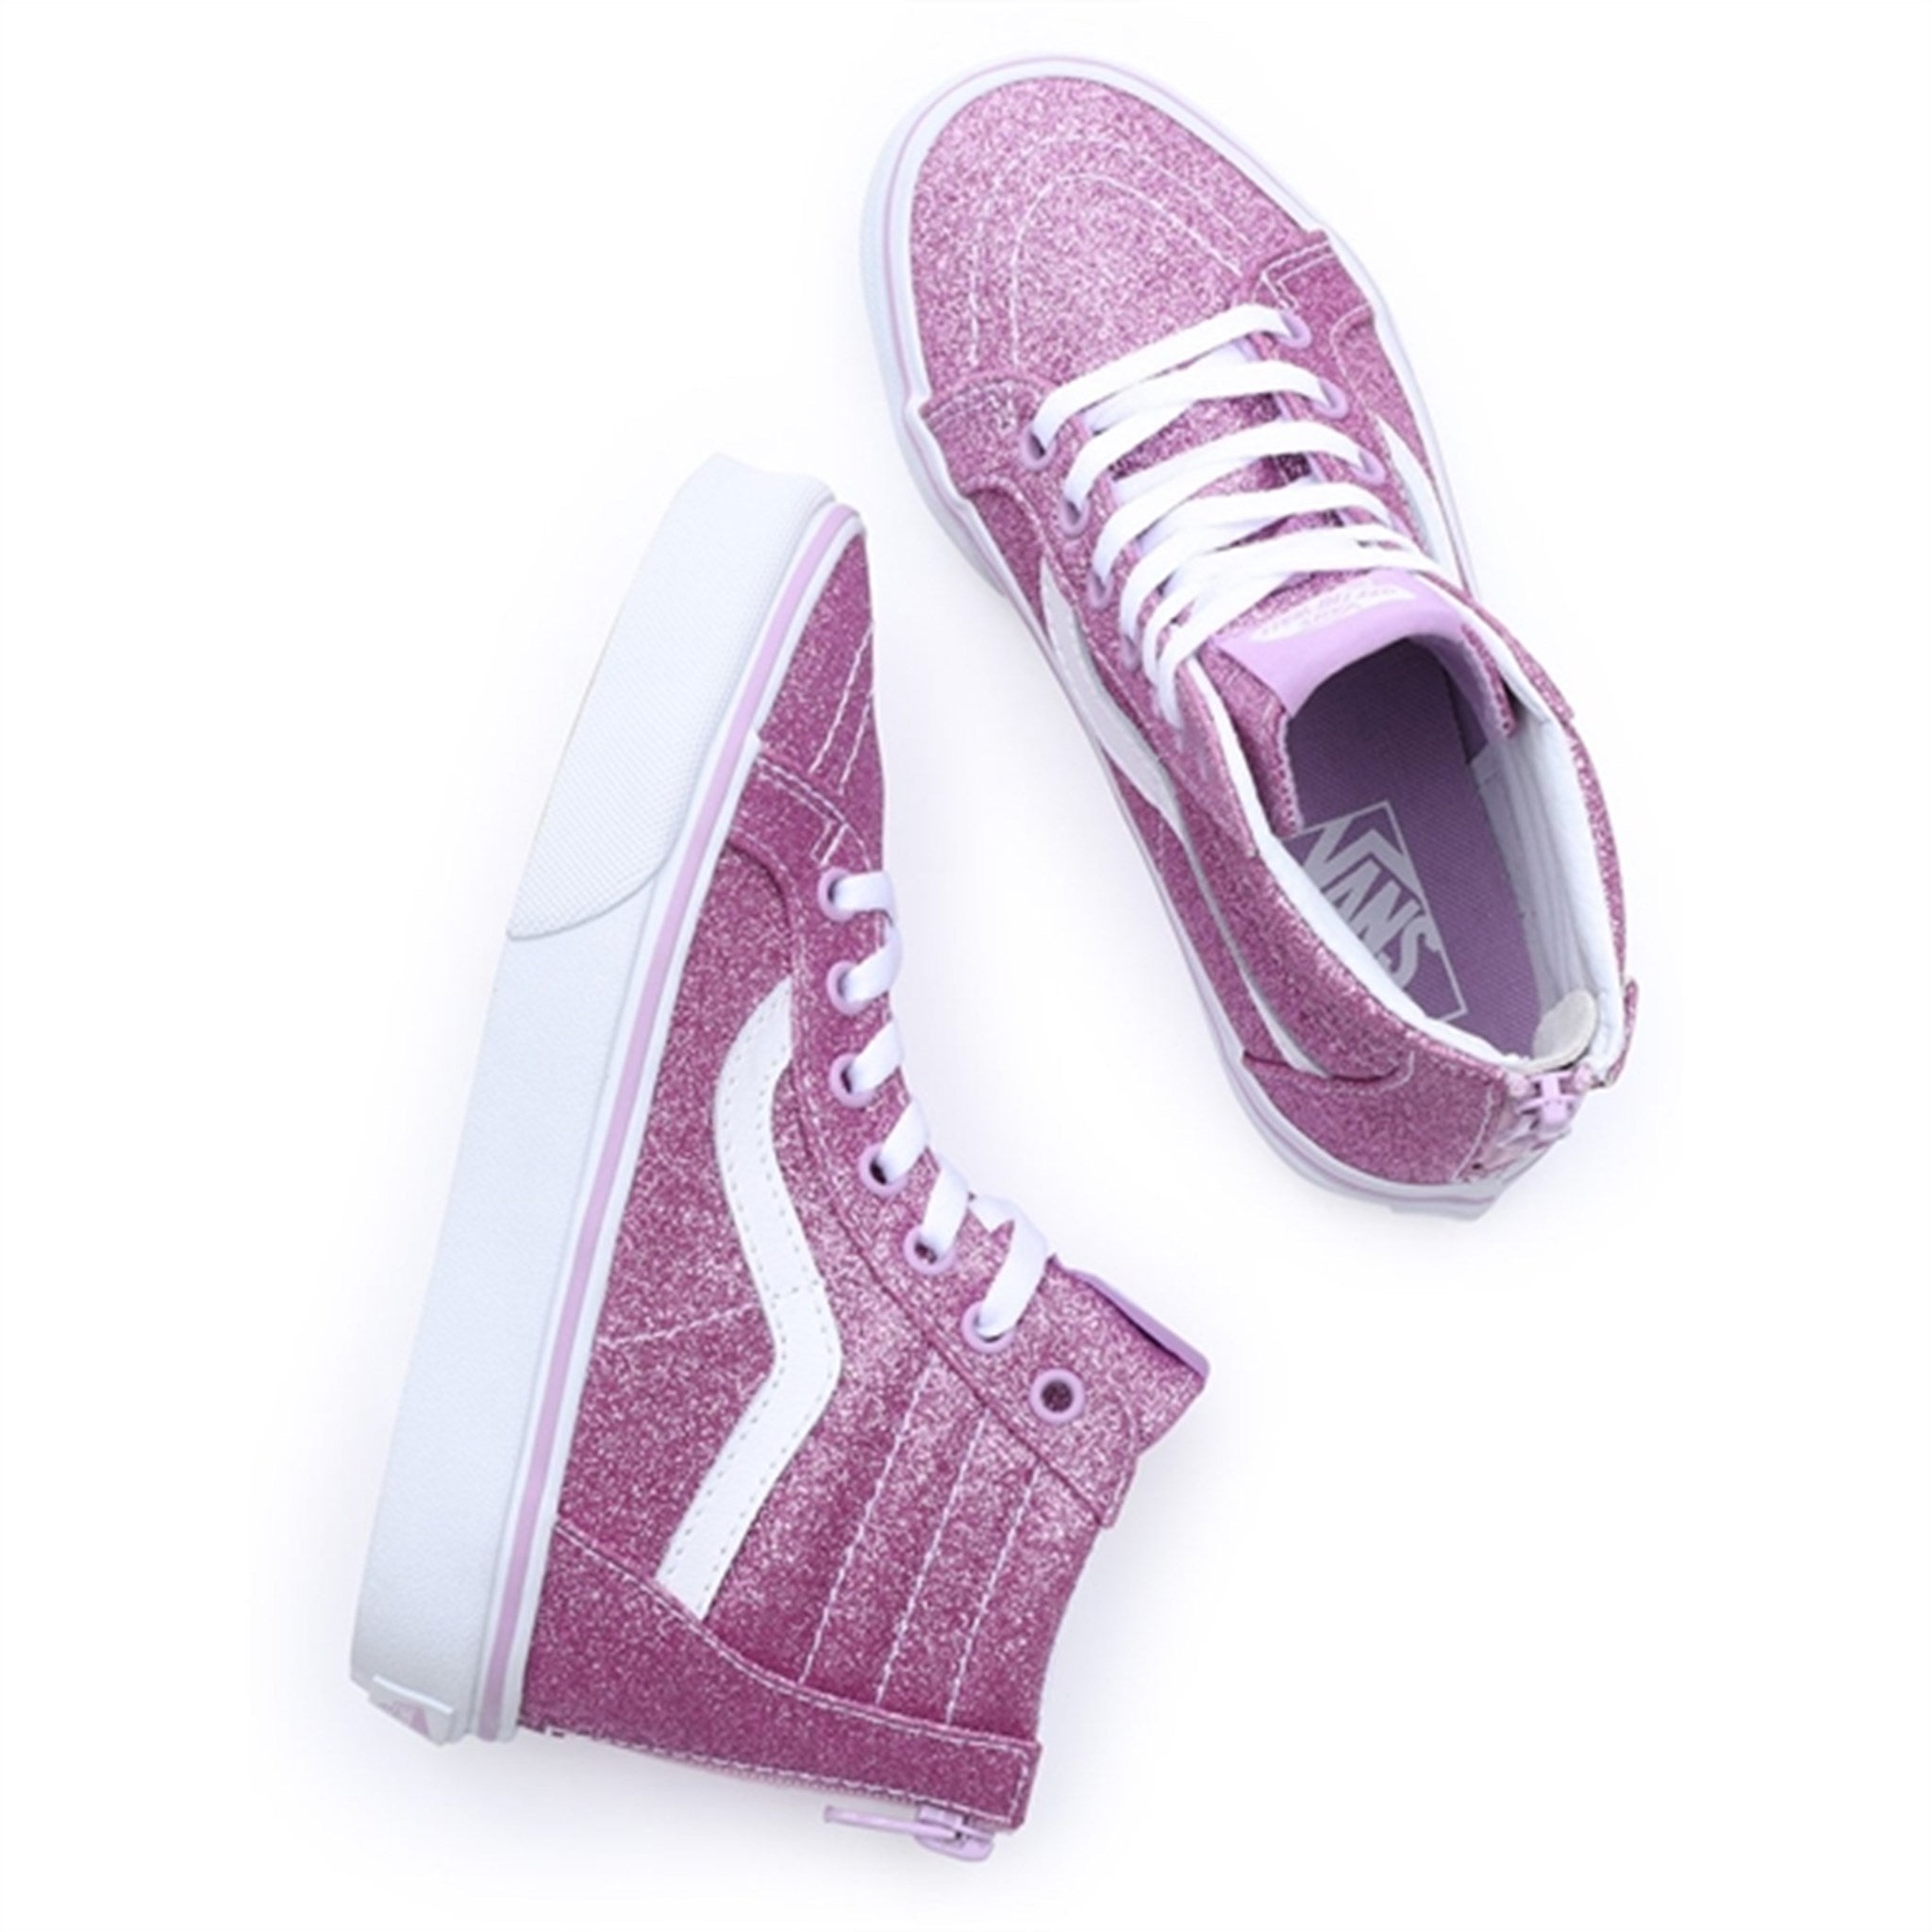 VANS Uy Sk8-Hi Zip Glitter Lilac Sneakers 2